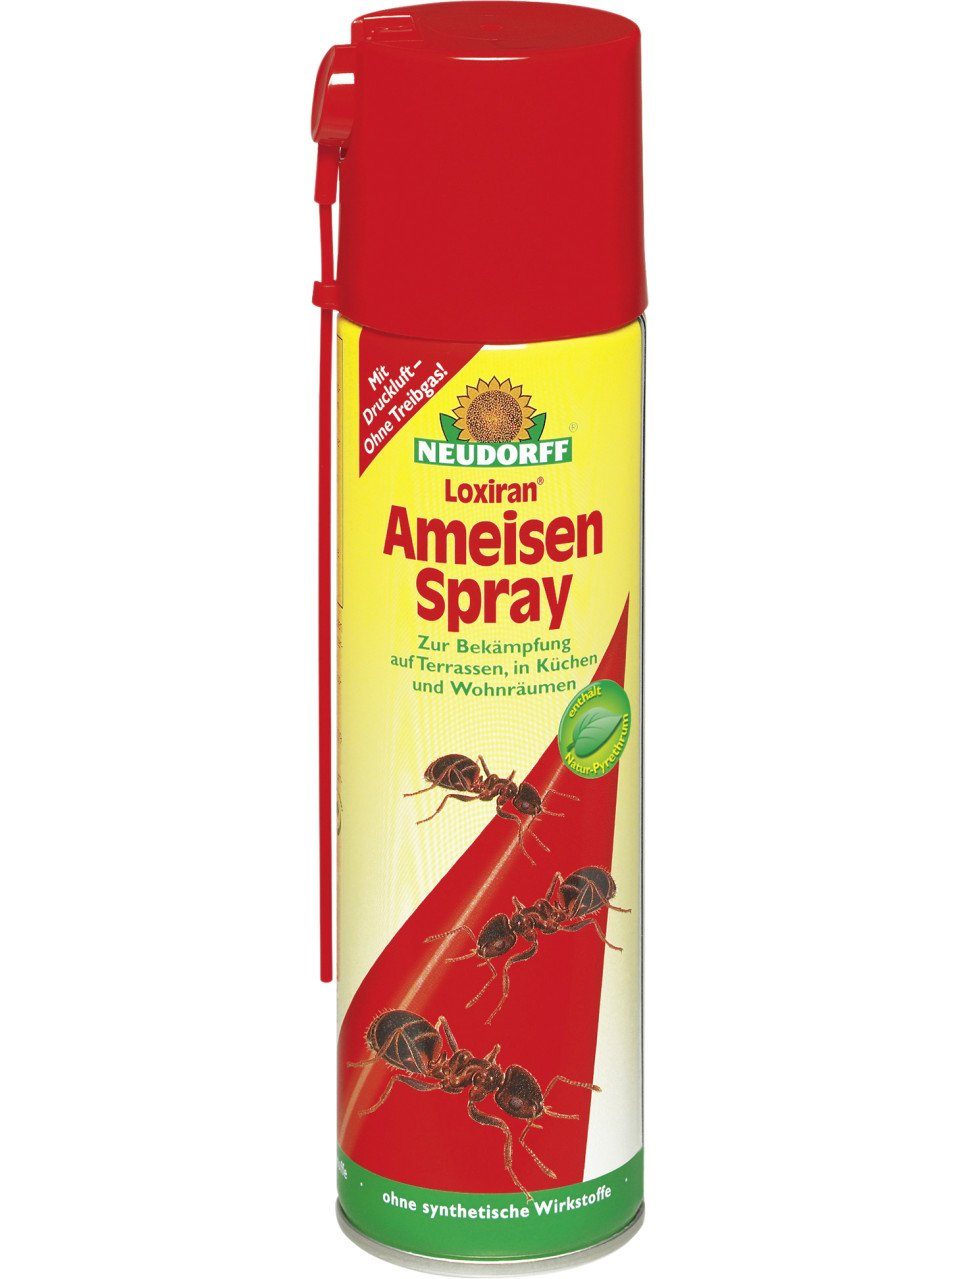 0.2 Neudorff 200 Loxiran l Insektenvernichtungsmittel ml, Ameisen-Spray